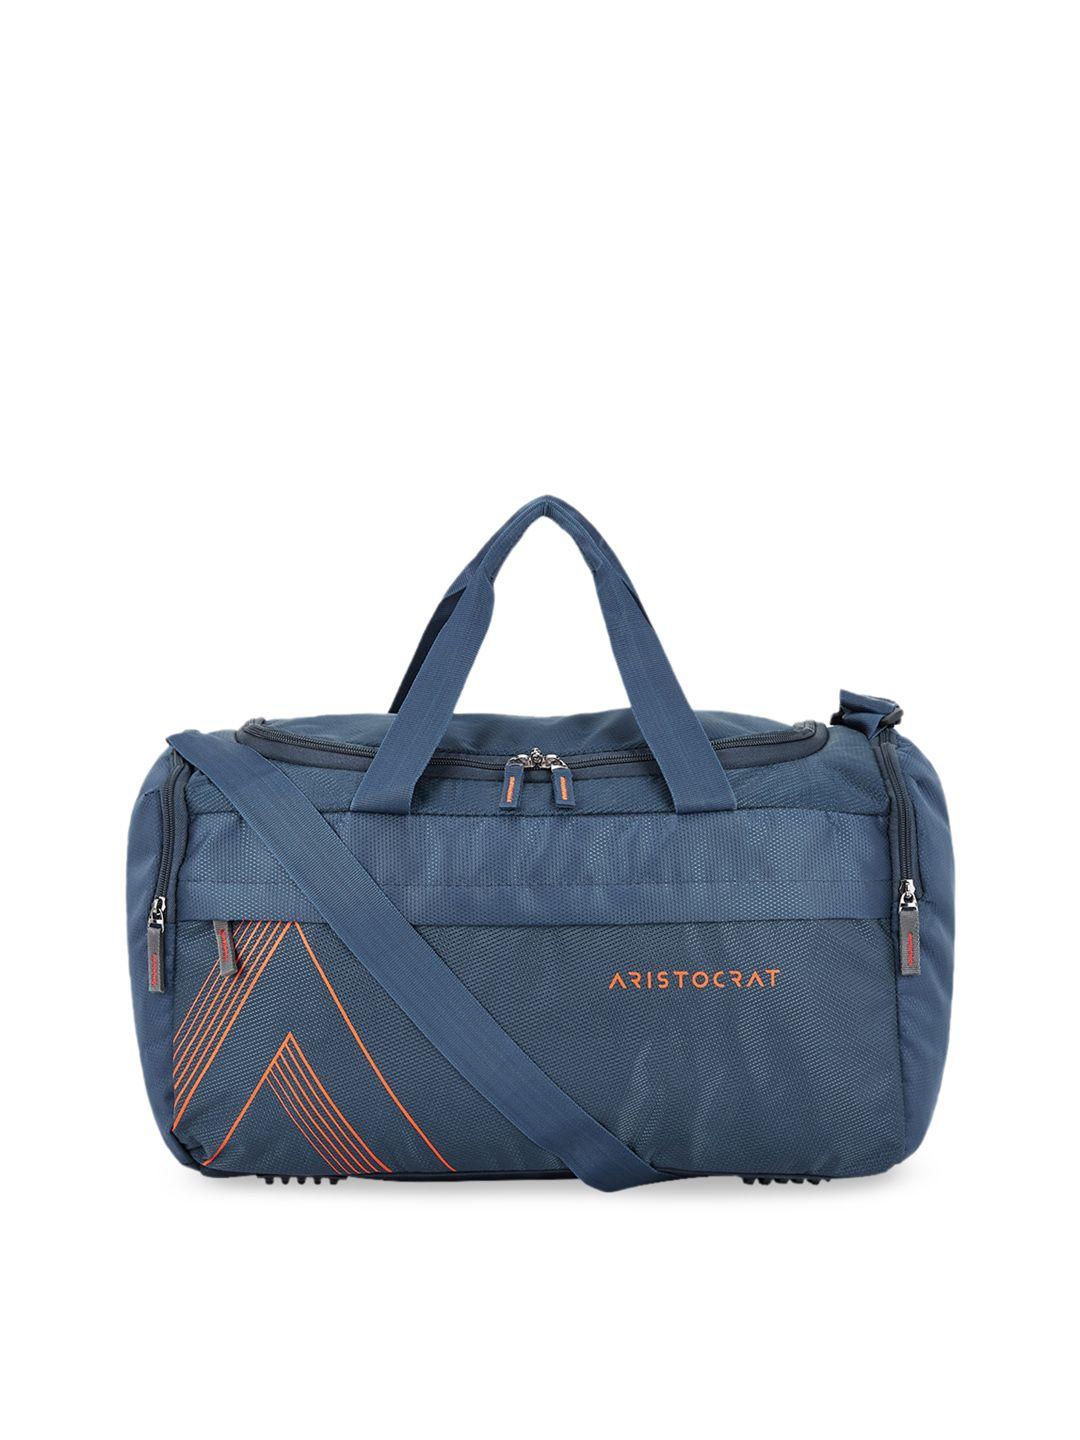 aristocrat-logo-printed-duffel-bag